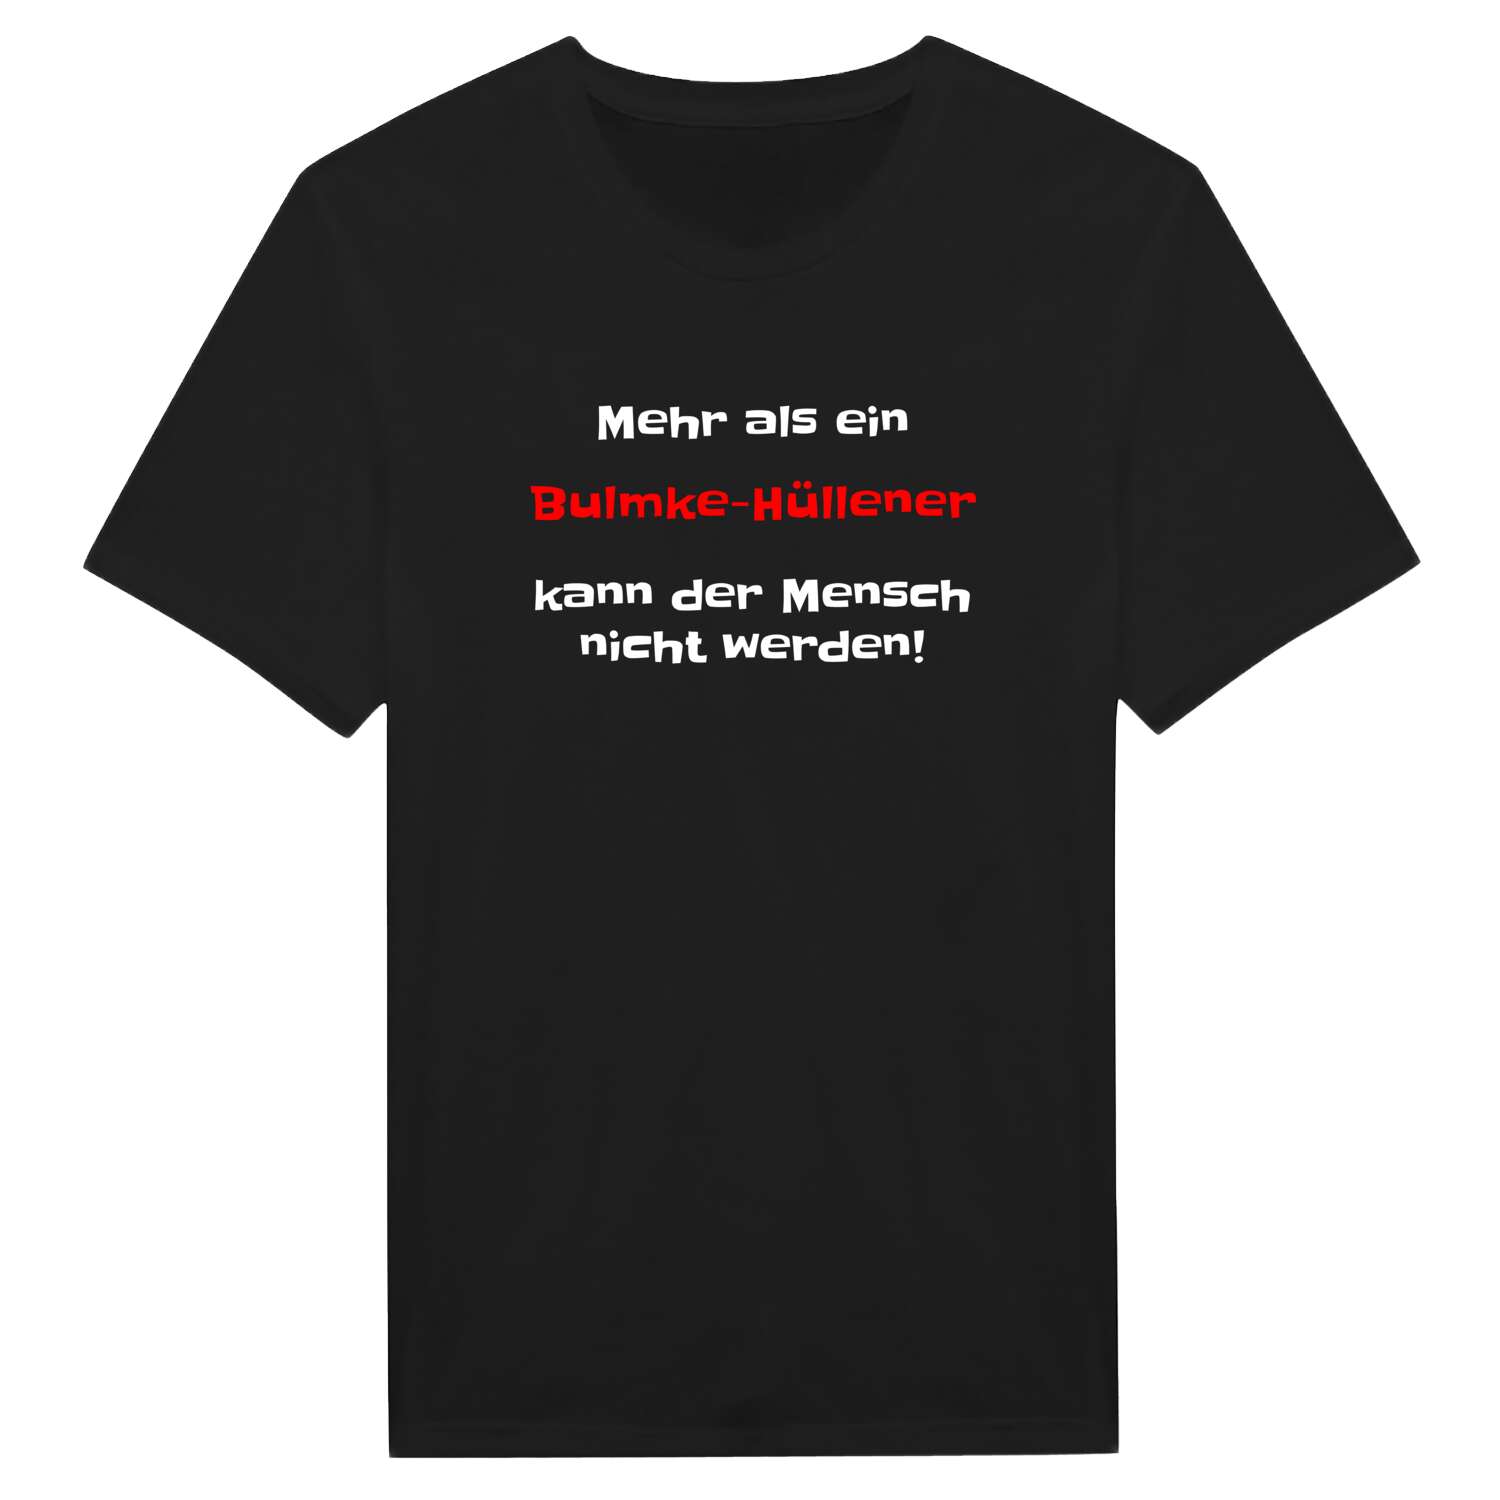 Bulmke-Hüllen T-Shirt »Mehr als ein«